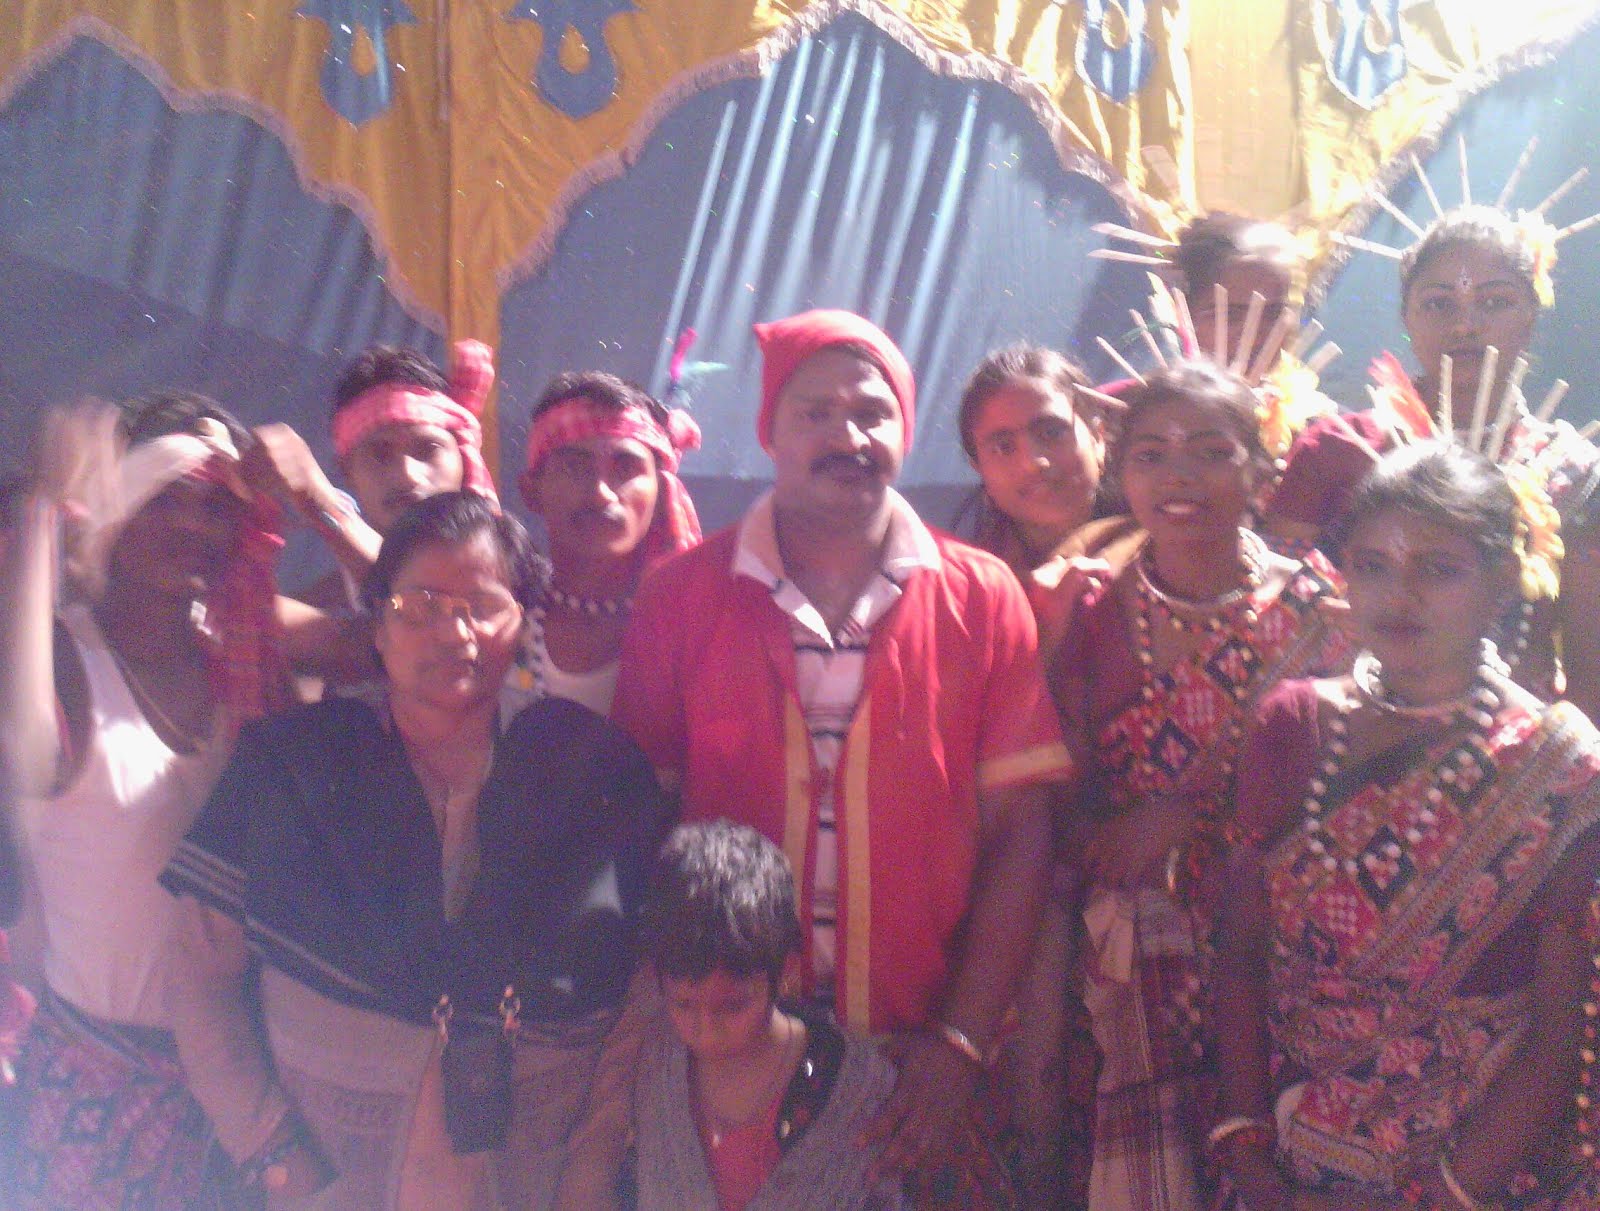 sambalpuri folk dance during Nabarangpur Mondei festival 2014 at Odisha